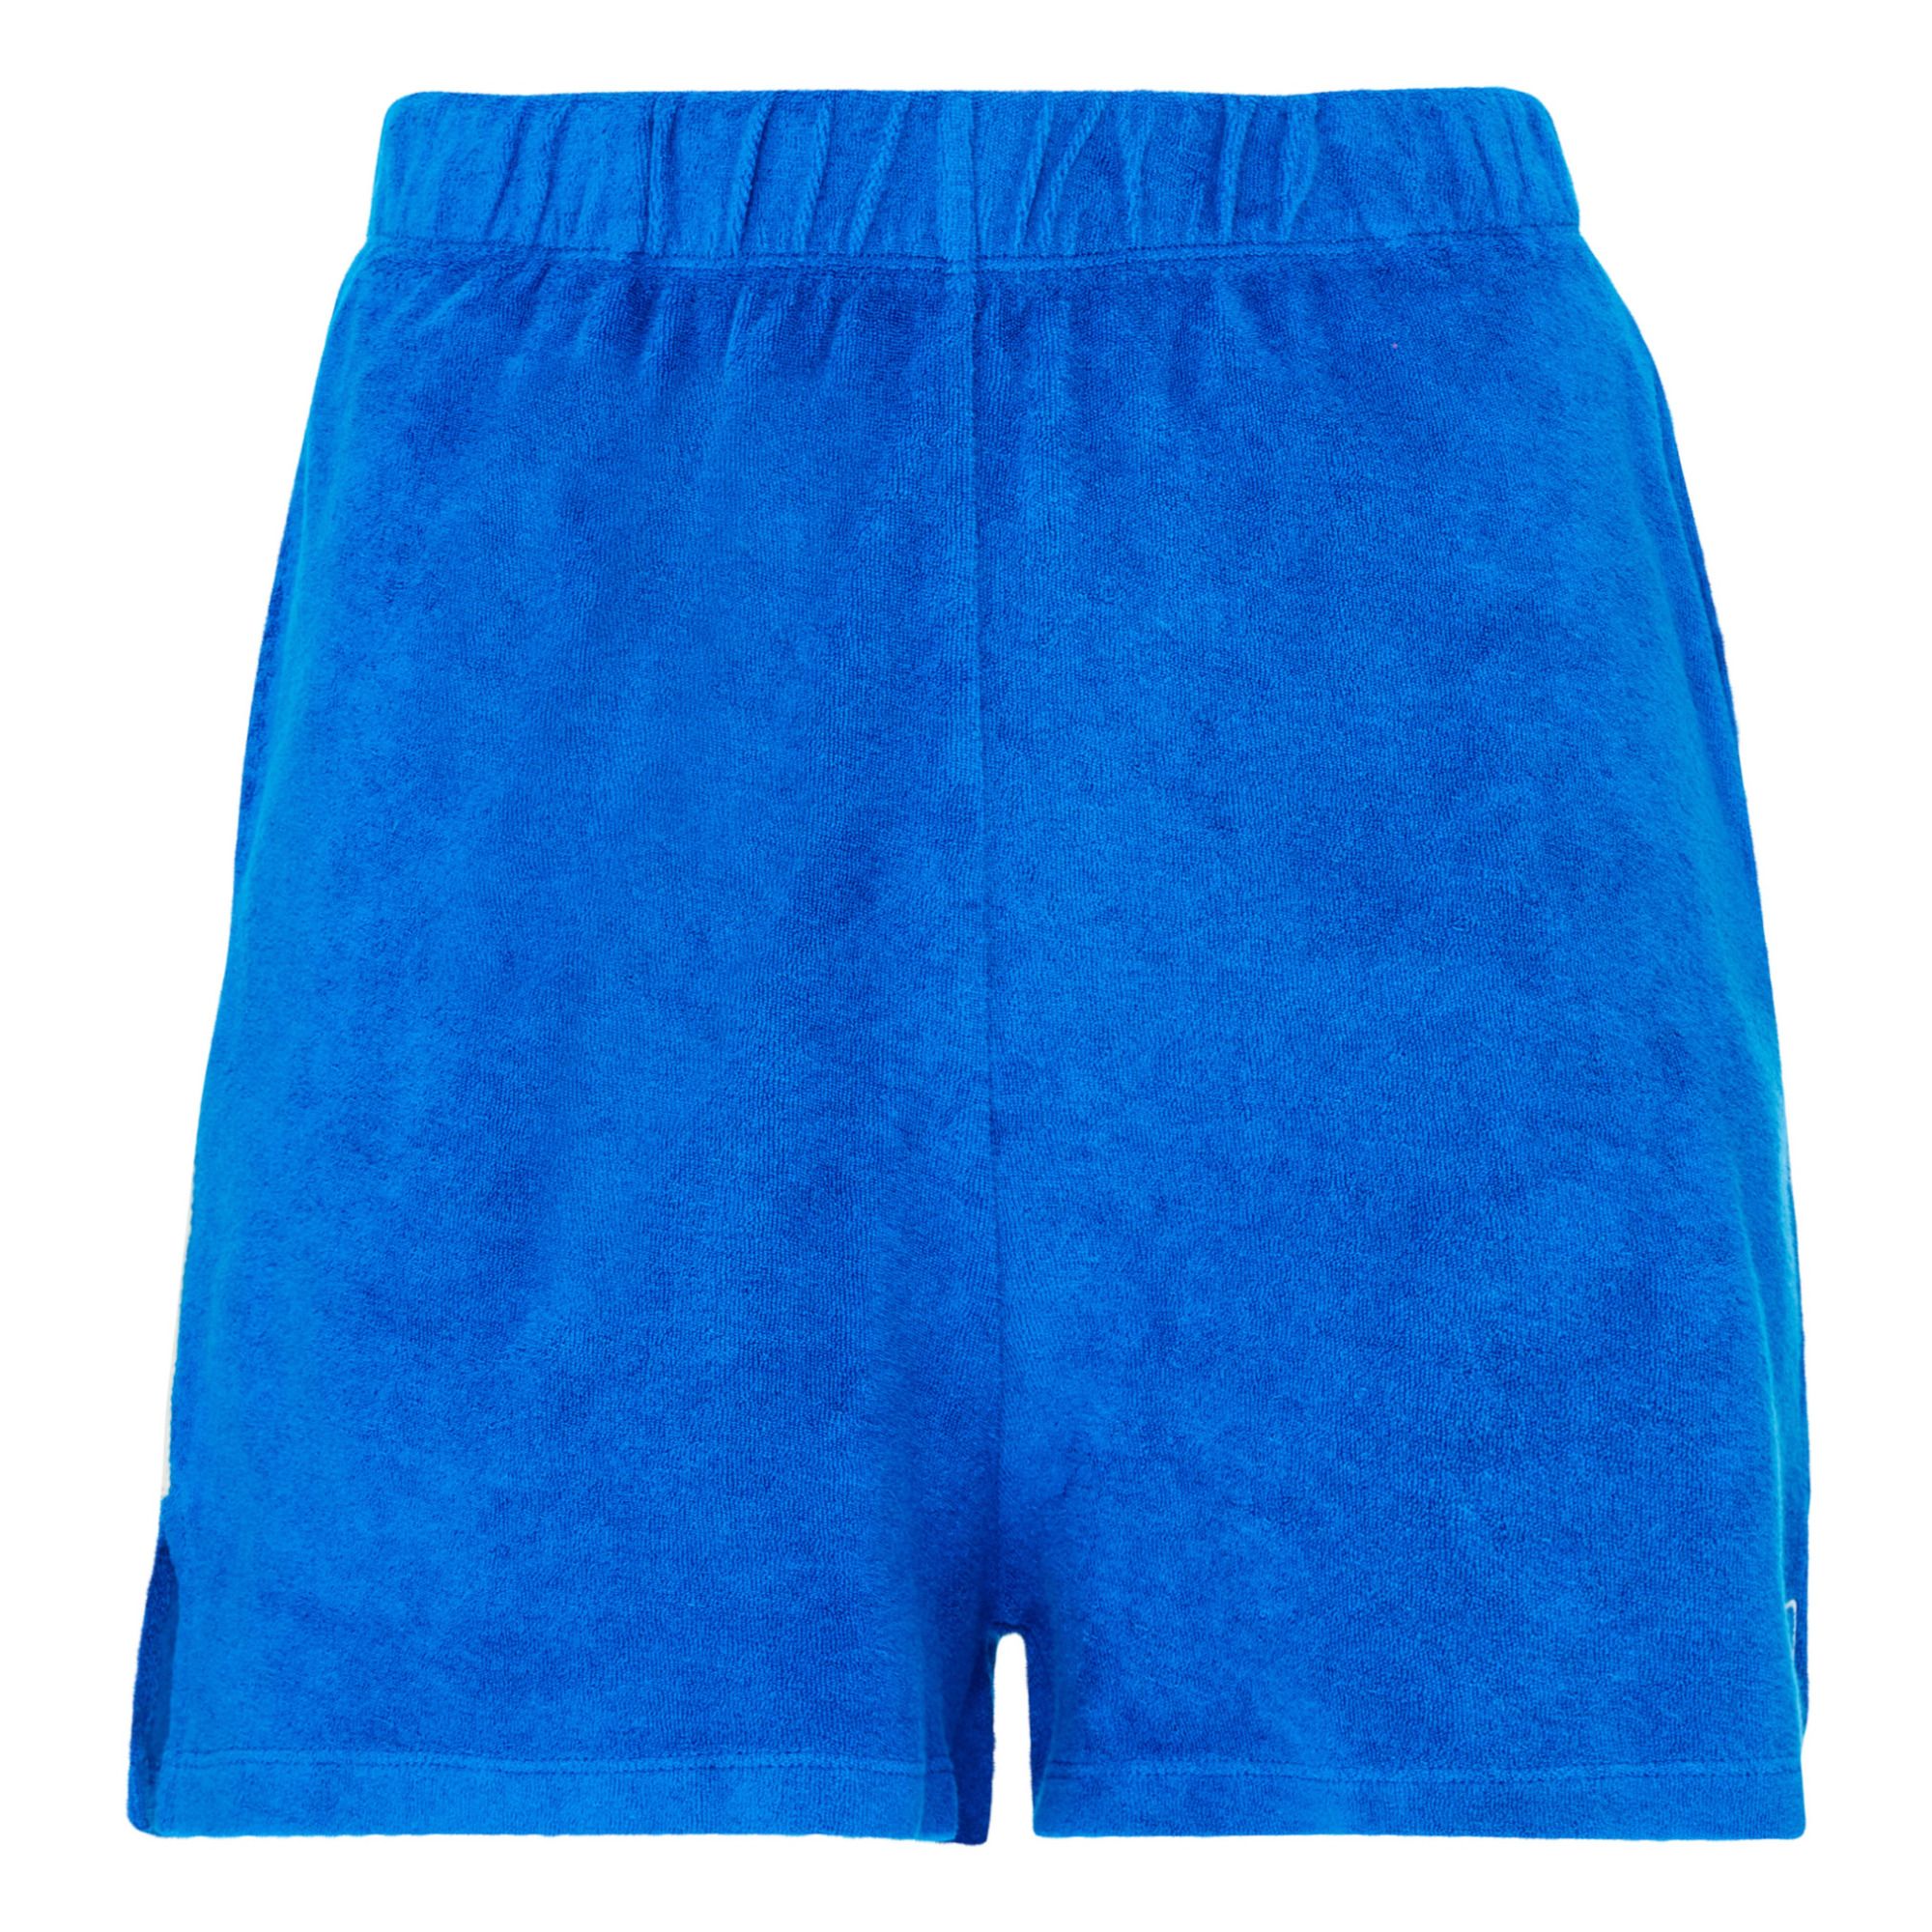 Pantalones cortos azules mujer